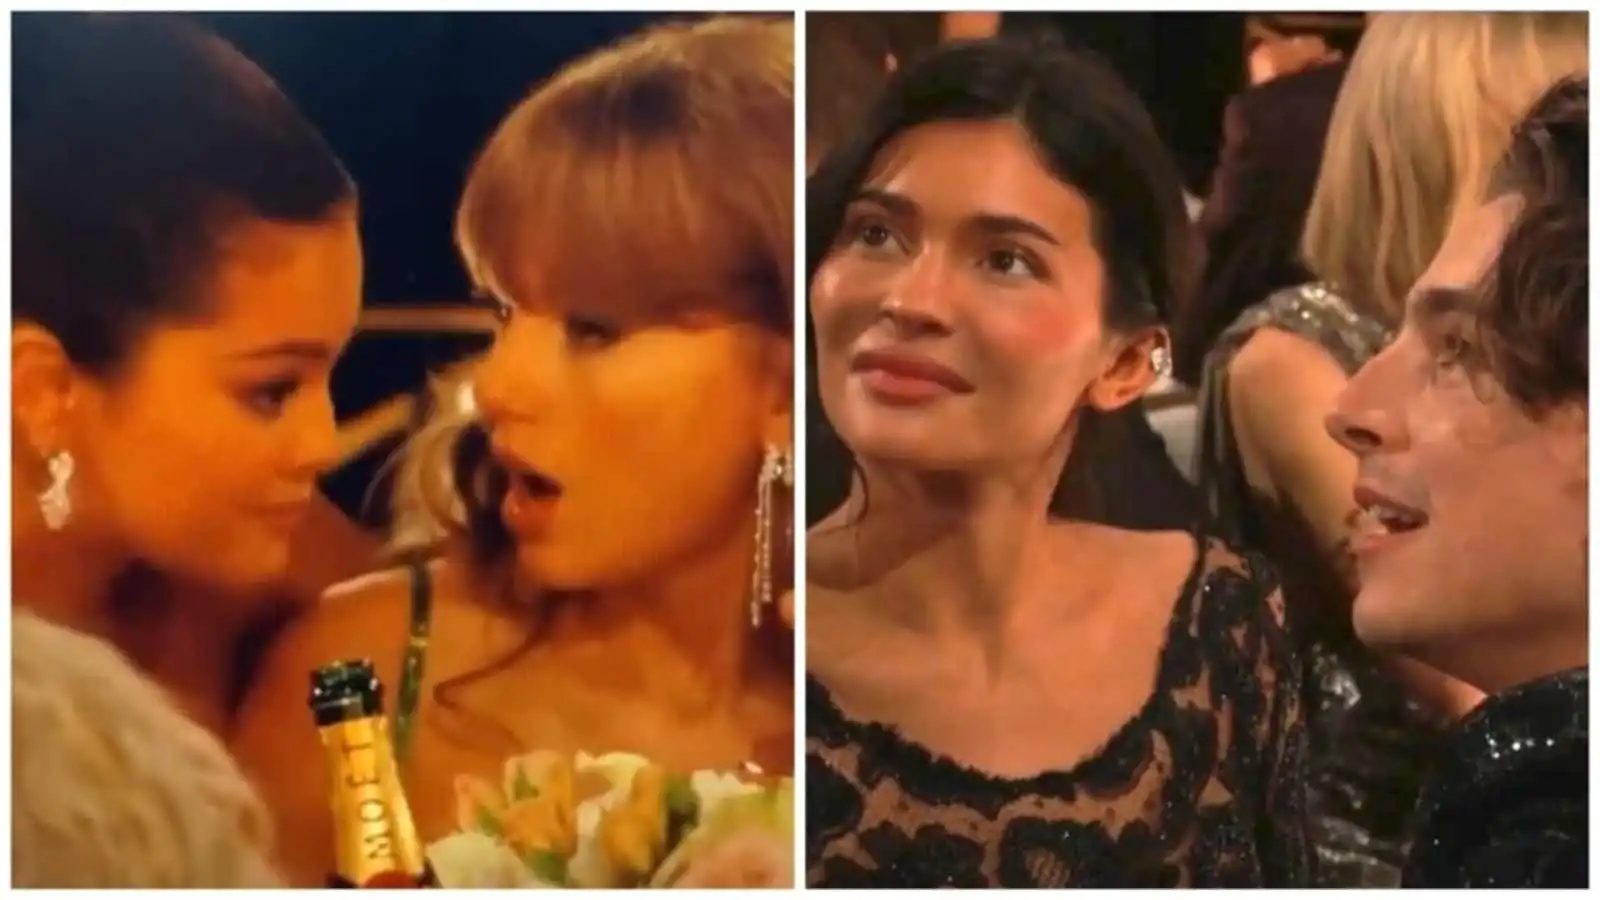 Globos de Oro de Selena Gomez 2024: No hay chismes sobre Timothée Chalamet o Kylie Jenner con su mejor amiga Taylor Swift, según un informe